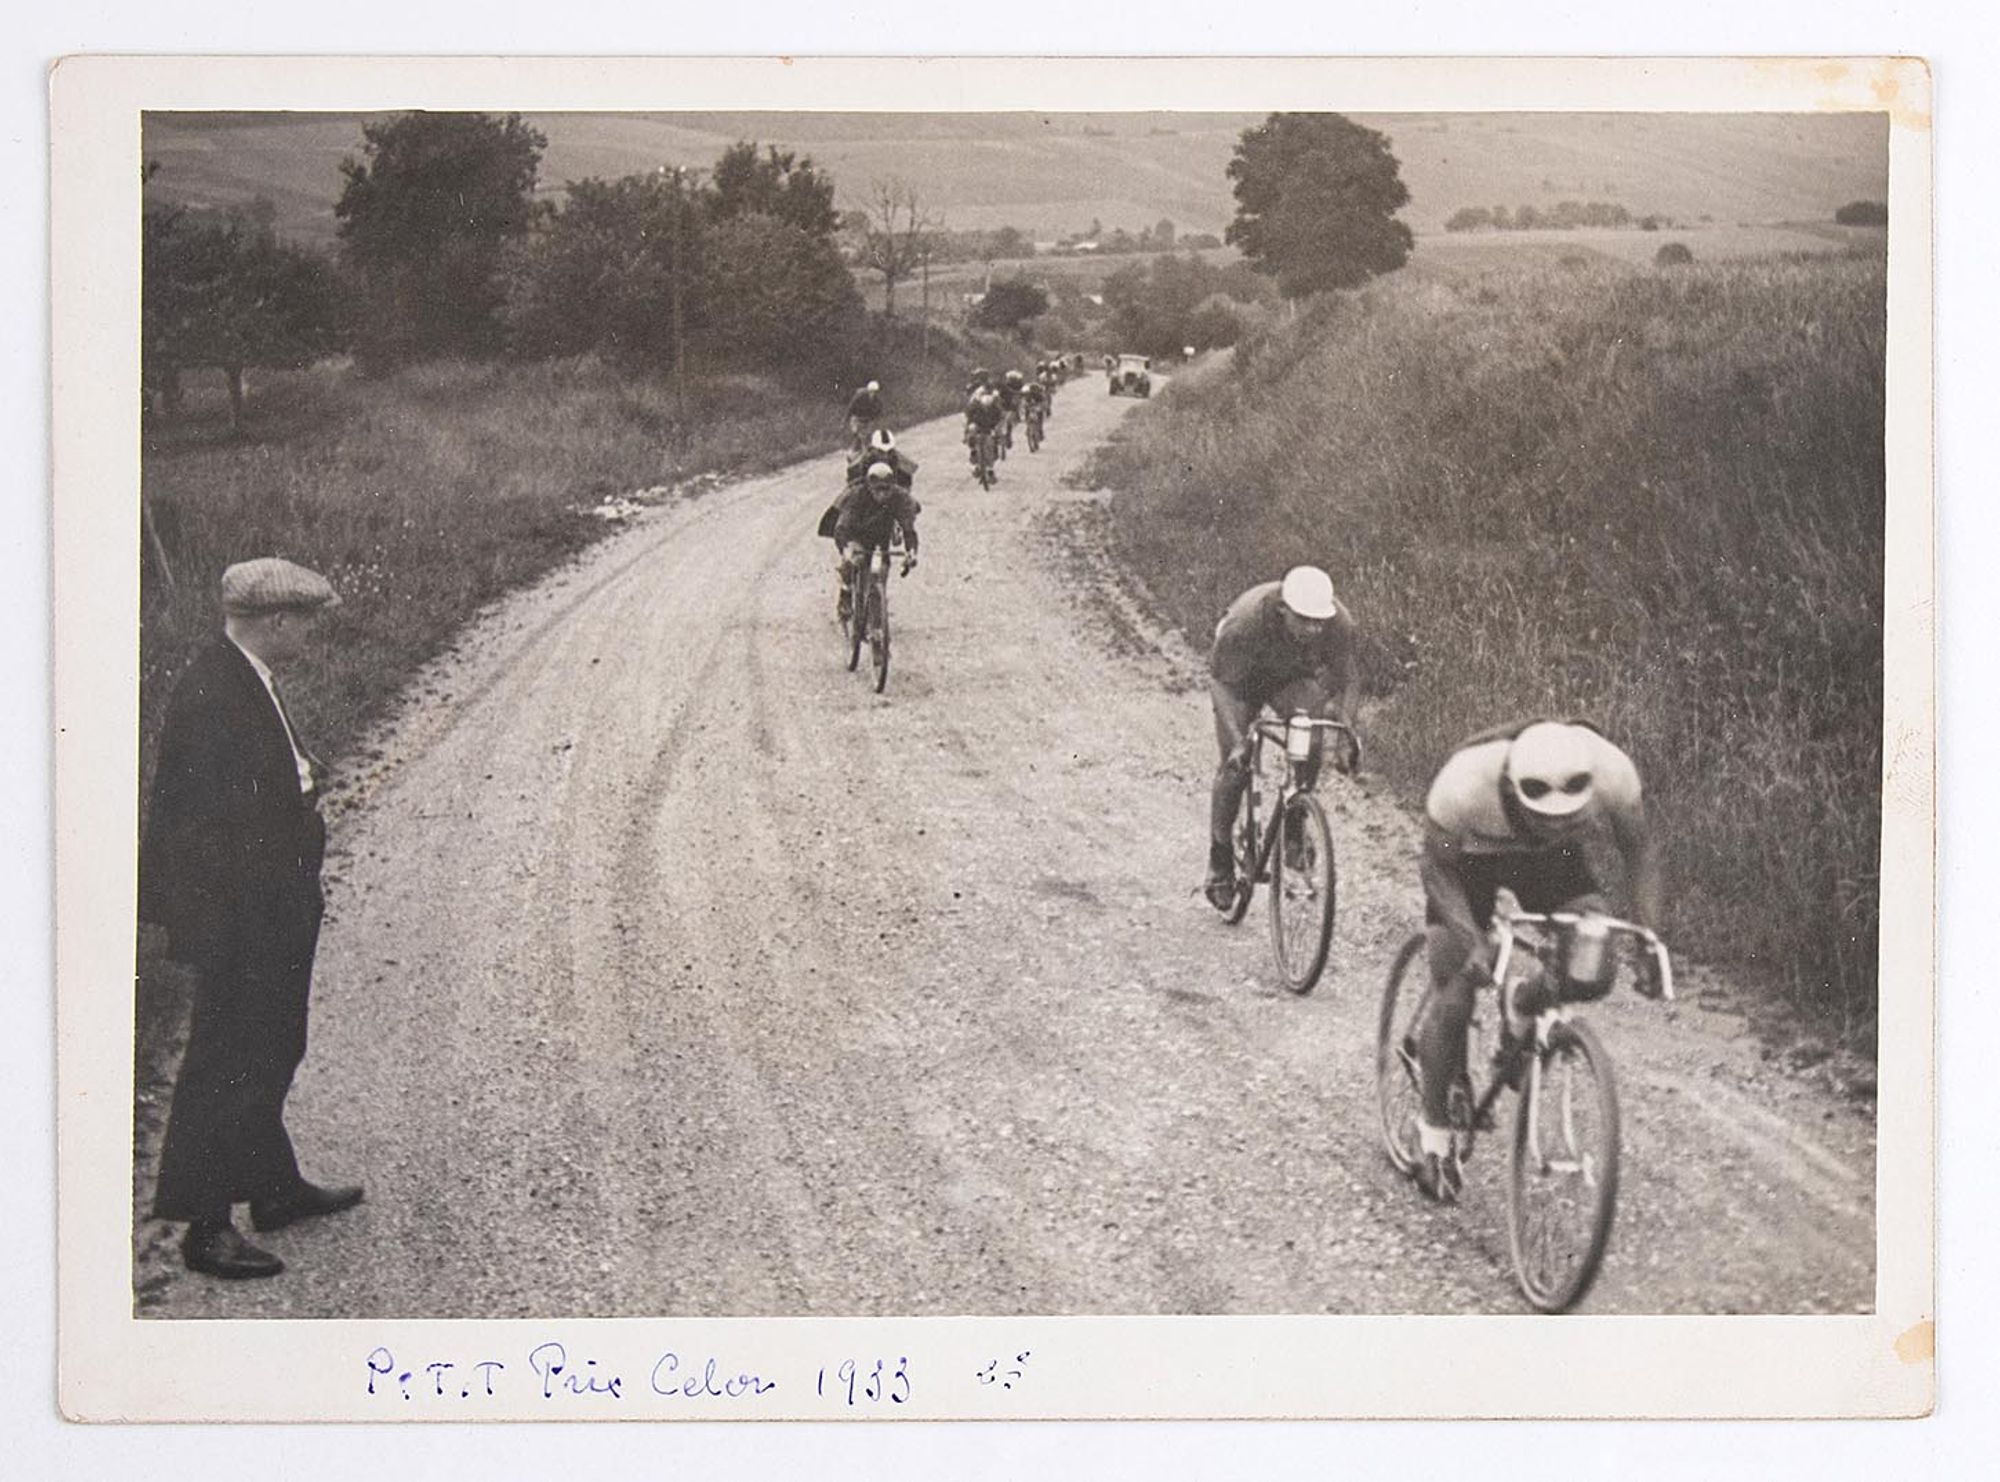 1933. Petit prix Celor [huilerie industrielle de Saint-Ouen]. Un groupe de coureurs cyclistes à l'assaut d'une côte, dans la campagne. Lieu à identifier.